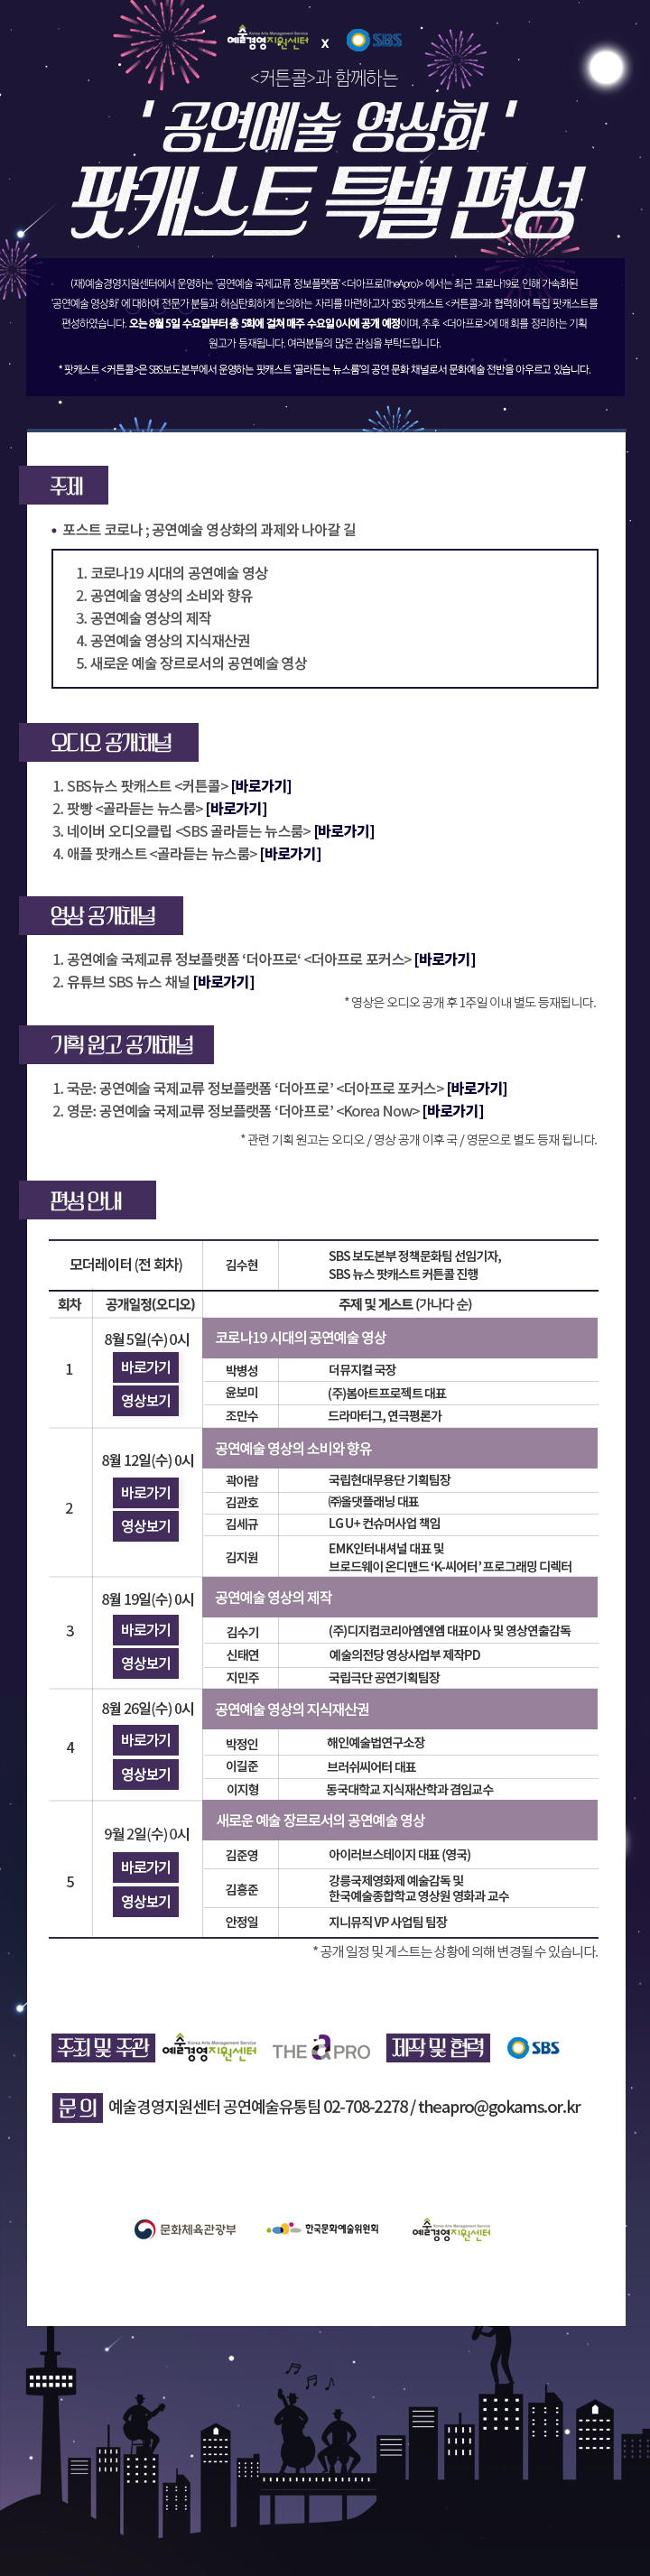 SBS <커튼콜>과 함께하는 ''공연예술 영상화'' 팟캐스트 특별 편성 (08.05~09.02)